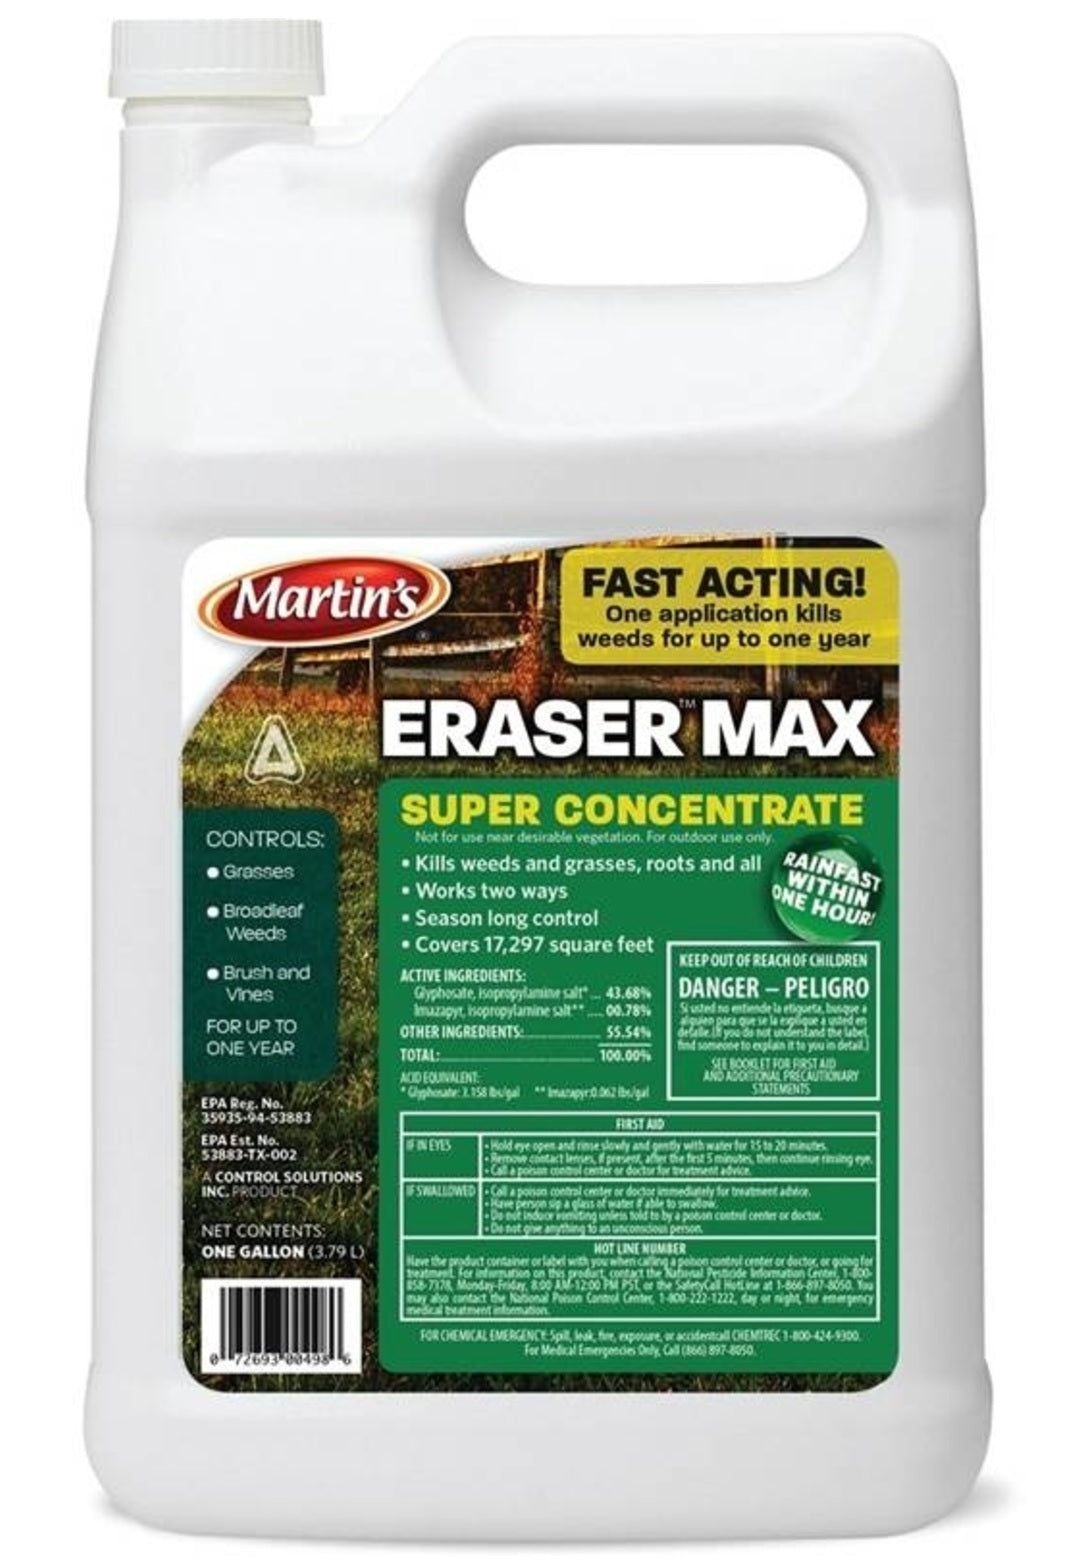 Martin's 82002489 Eraser Max Super Concentrate Herbicide, 1 Gallon